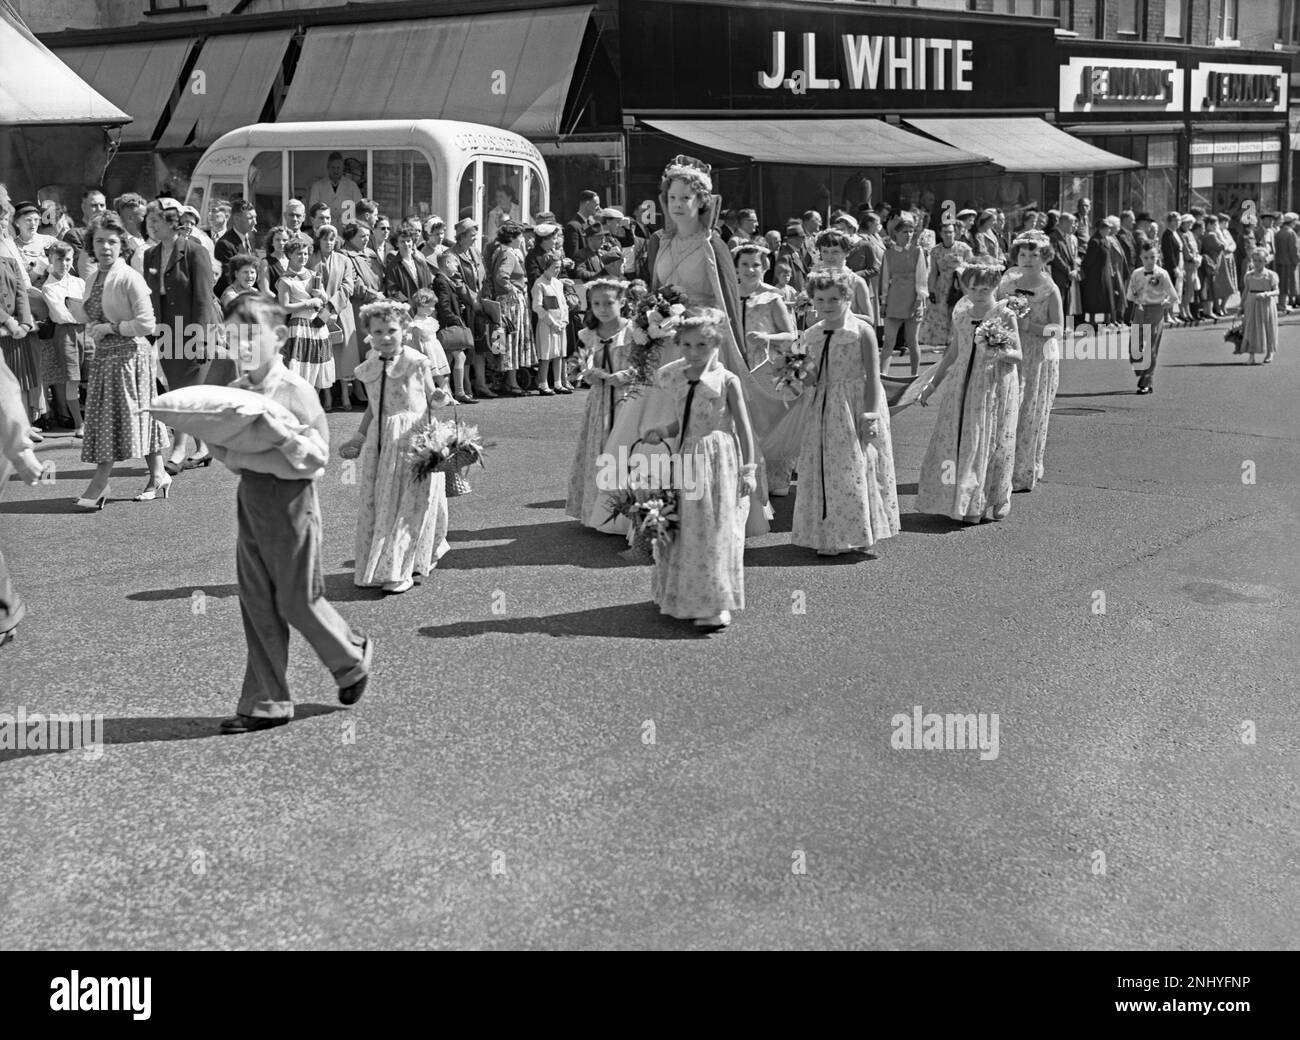 Eine Whit Walks-Prozession in Union Street, Oldham, Greater Manchester, Lancashire, England, UK c.1960. Eine „Rose Queen“ trägt ihre Krone und ist von Kindern umgeben, die Blumen tragen. Im Hintergrund befindet sich ein O'Donnell's Eiswagen. Die religiöse Veranstaltung in der Church of England fand traditionell am Whit Friday statt, an dem Kinder zusammen mit Messingbändern und Silberbändern beteiligt waren. Dieses Foto stammt aus einem alten Schwarz-Weiß-Negativ – einem klassischen 1950er/60s-Foto. Stockfoto